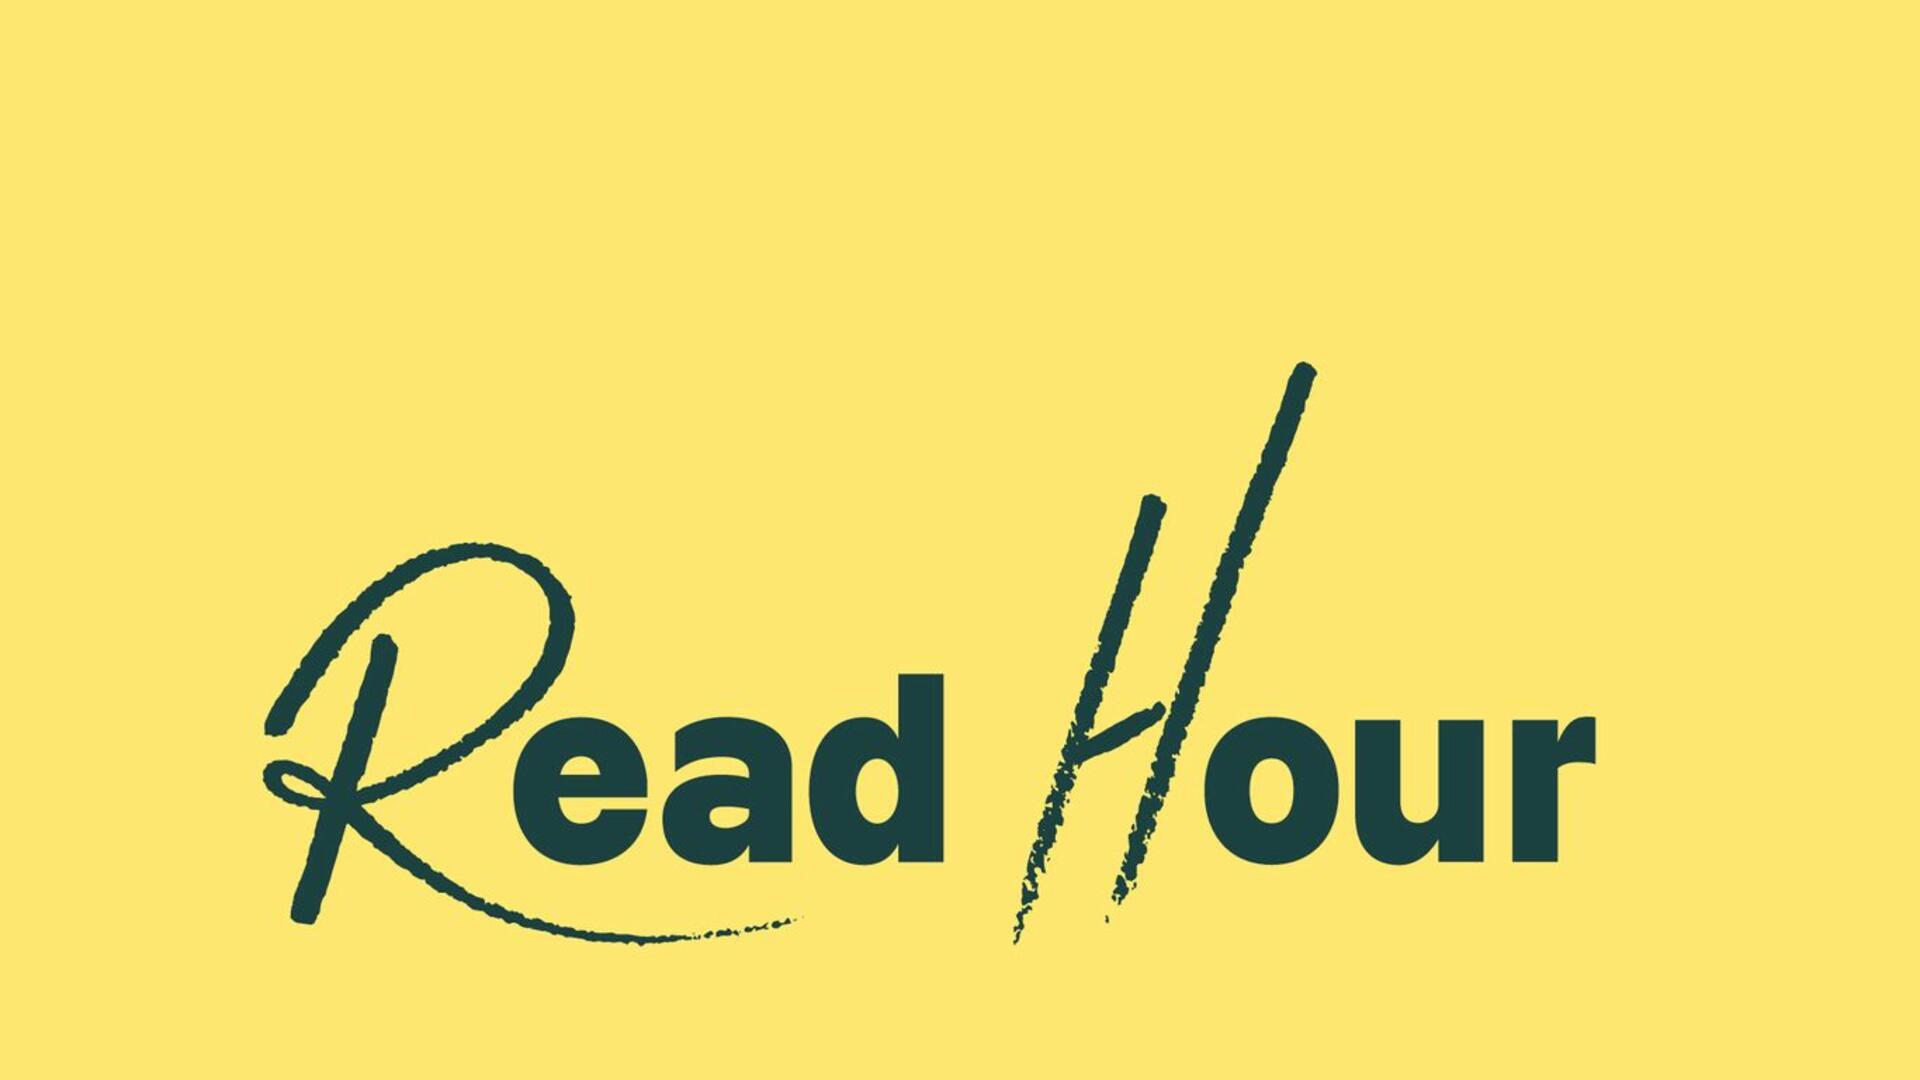 Tumma teksti keltaisella pohjalla: Read Hour